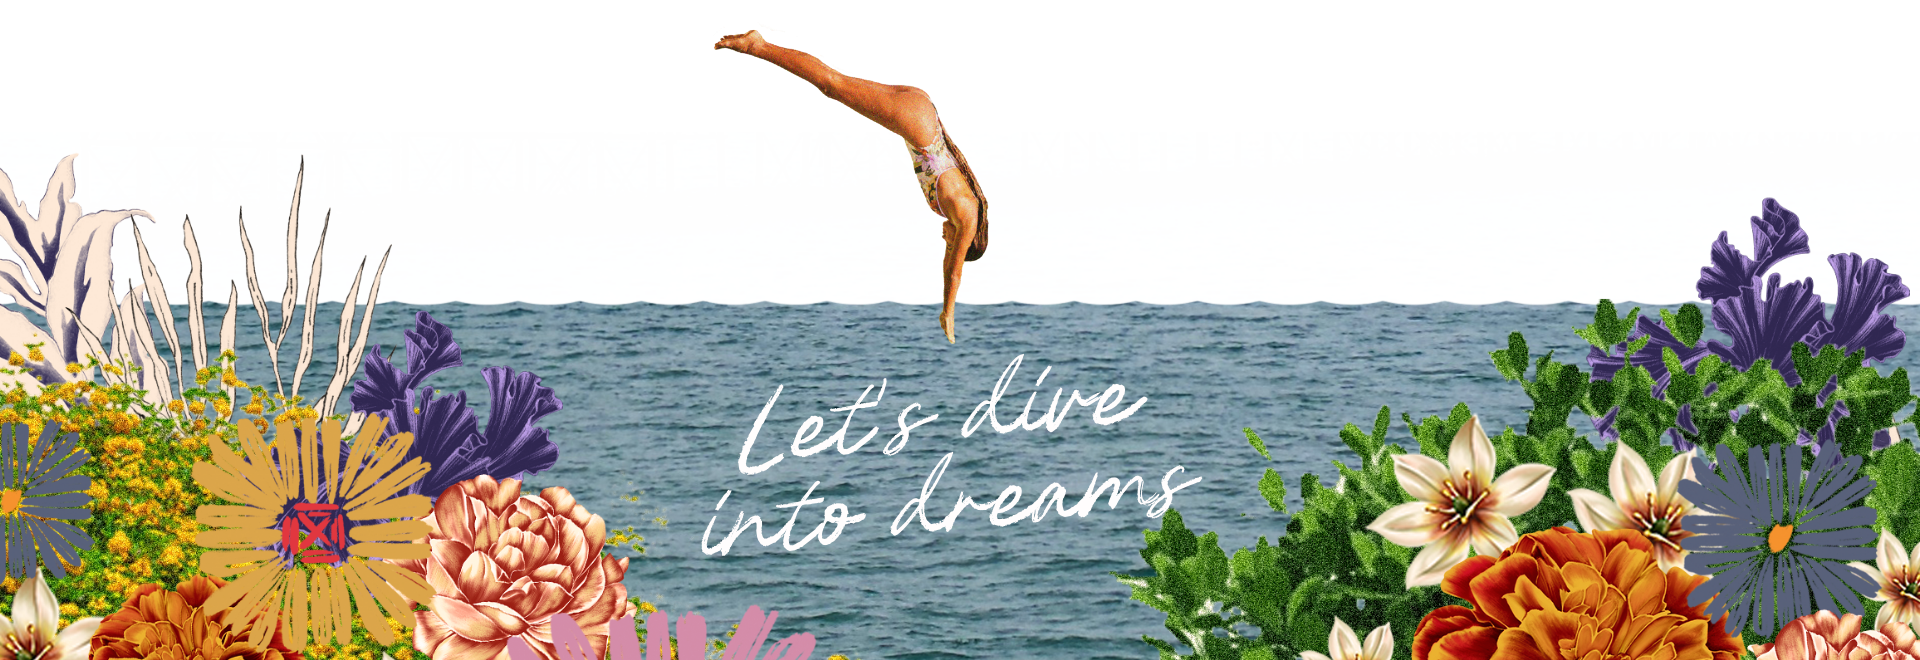 Diving into dreams